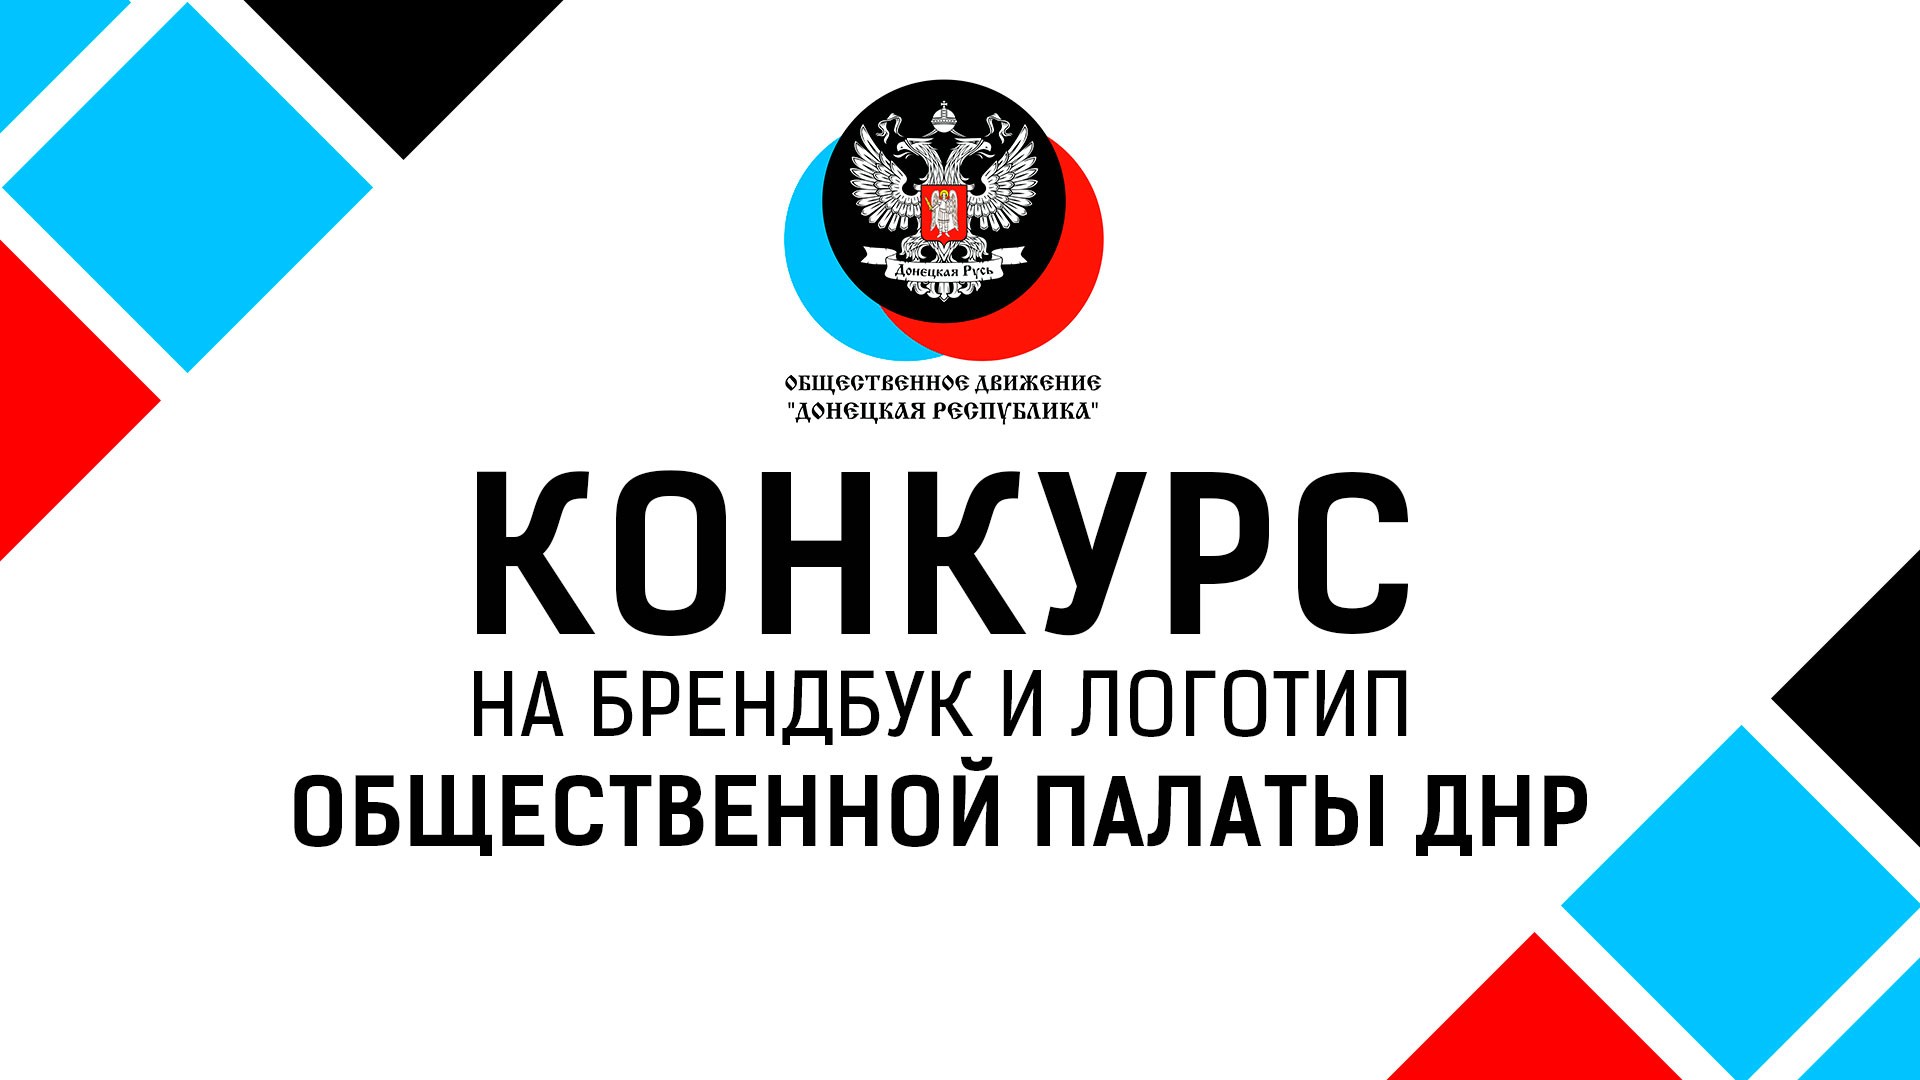 Объявляется старт конкурса на разработку брендбука и логотипа Общественной палаты ДНР 